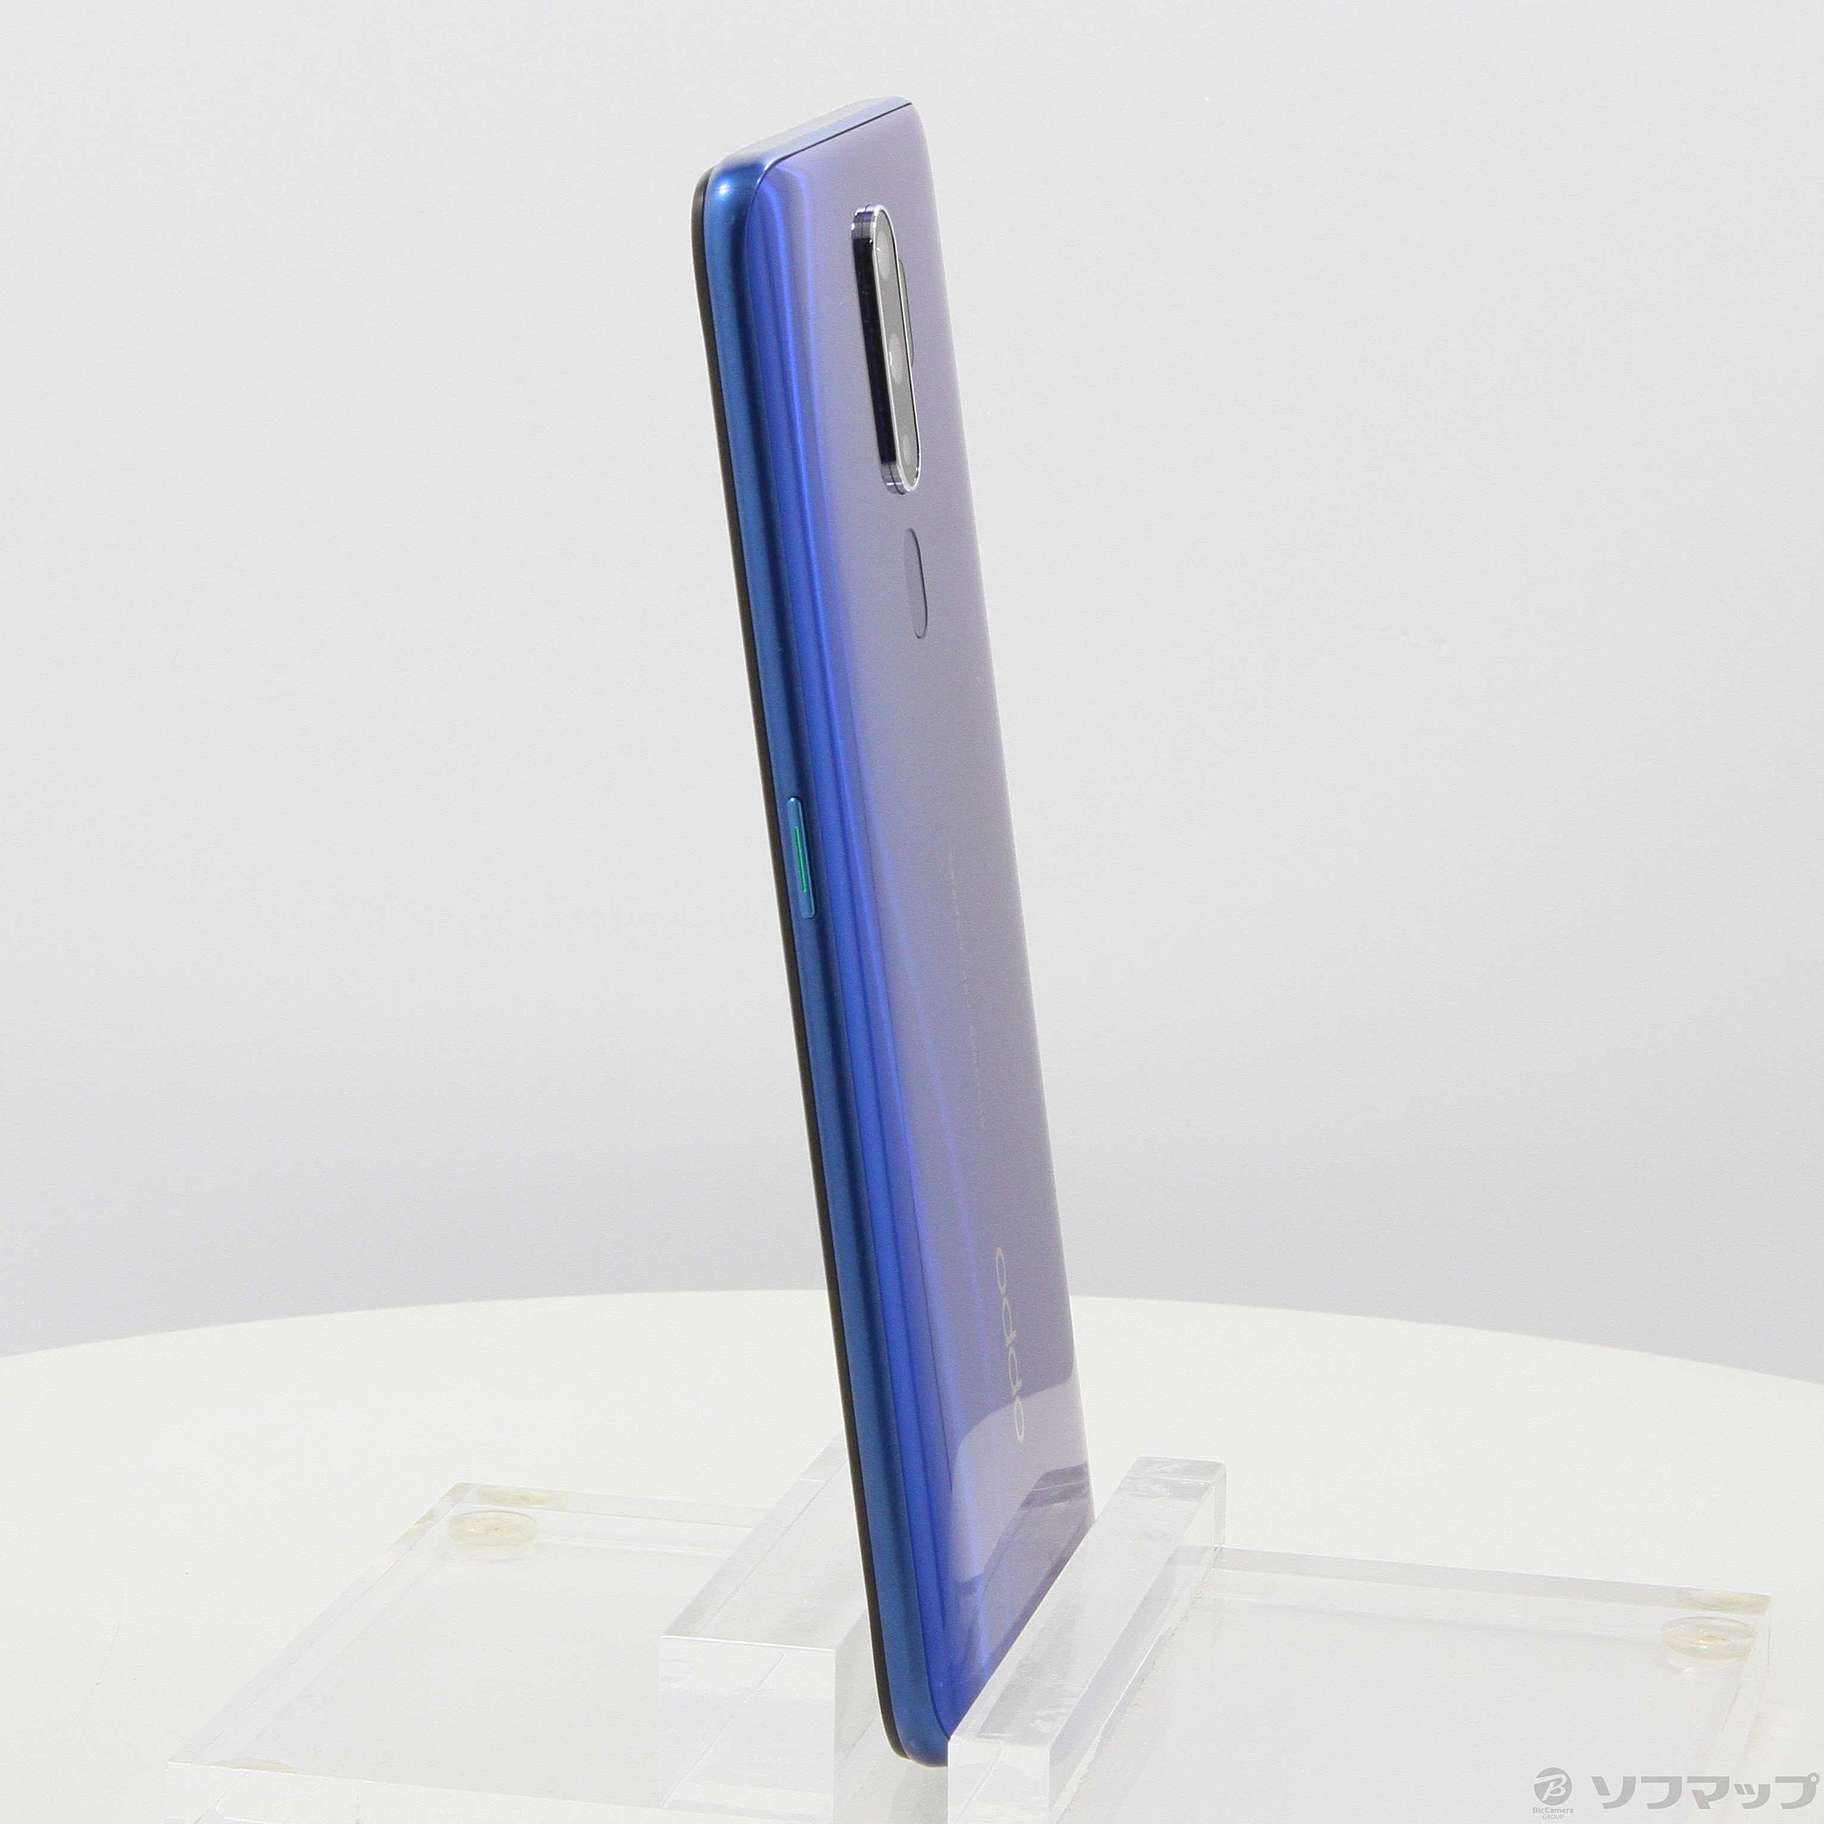 OPPO A5 2020 4GB 64GB blue 国内SIMフリー納品書付